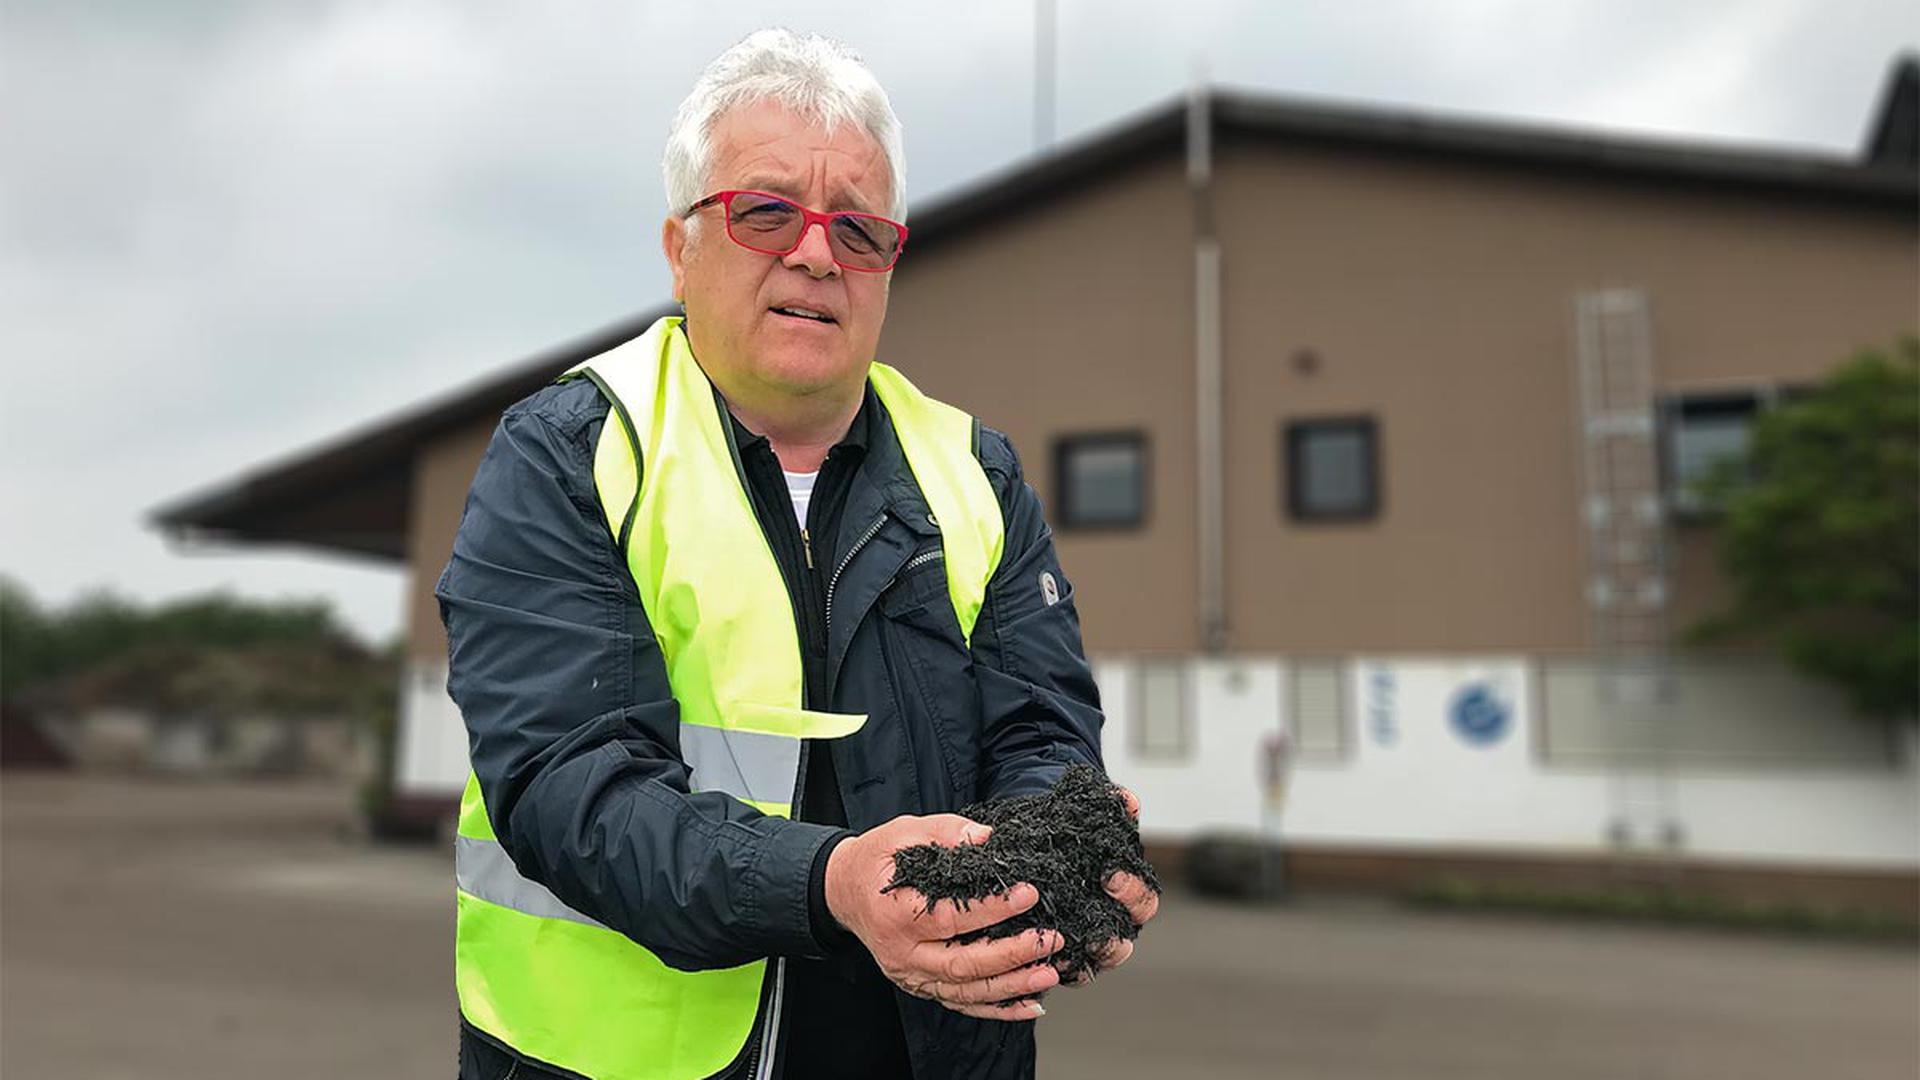 Franz Vogel ist stolz auf seinen Kompost. Die Behörden halten ihn allerdings für den Verursacher einer riesigen Umweltverschmutzung.